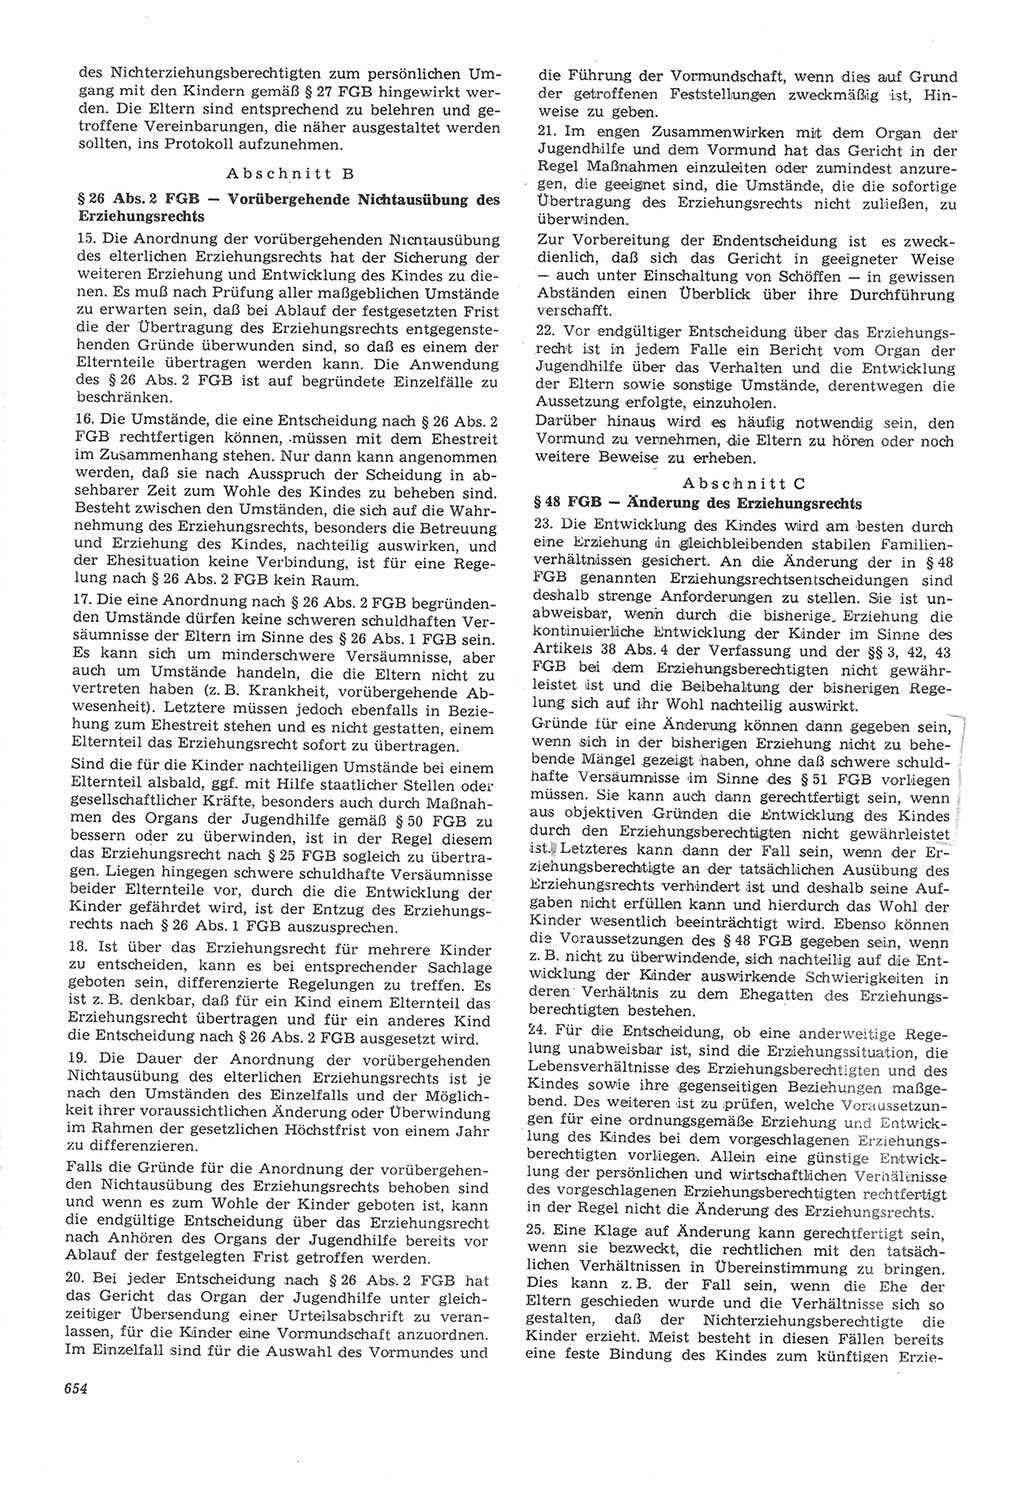 Neue Justiz (NJ), Zeitschrift für Recht und Rechtswissenschaft [Deutsche Demokratische Republik (DDR)], 22. Jahrgang 1968, Seite 654 (NJ DDR 1968, S. 654)